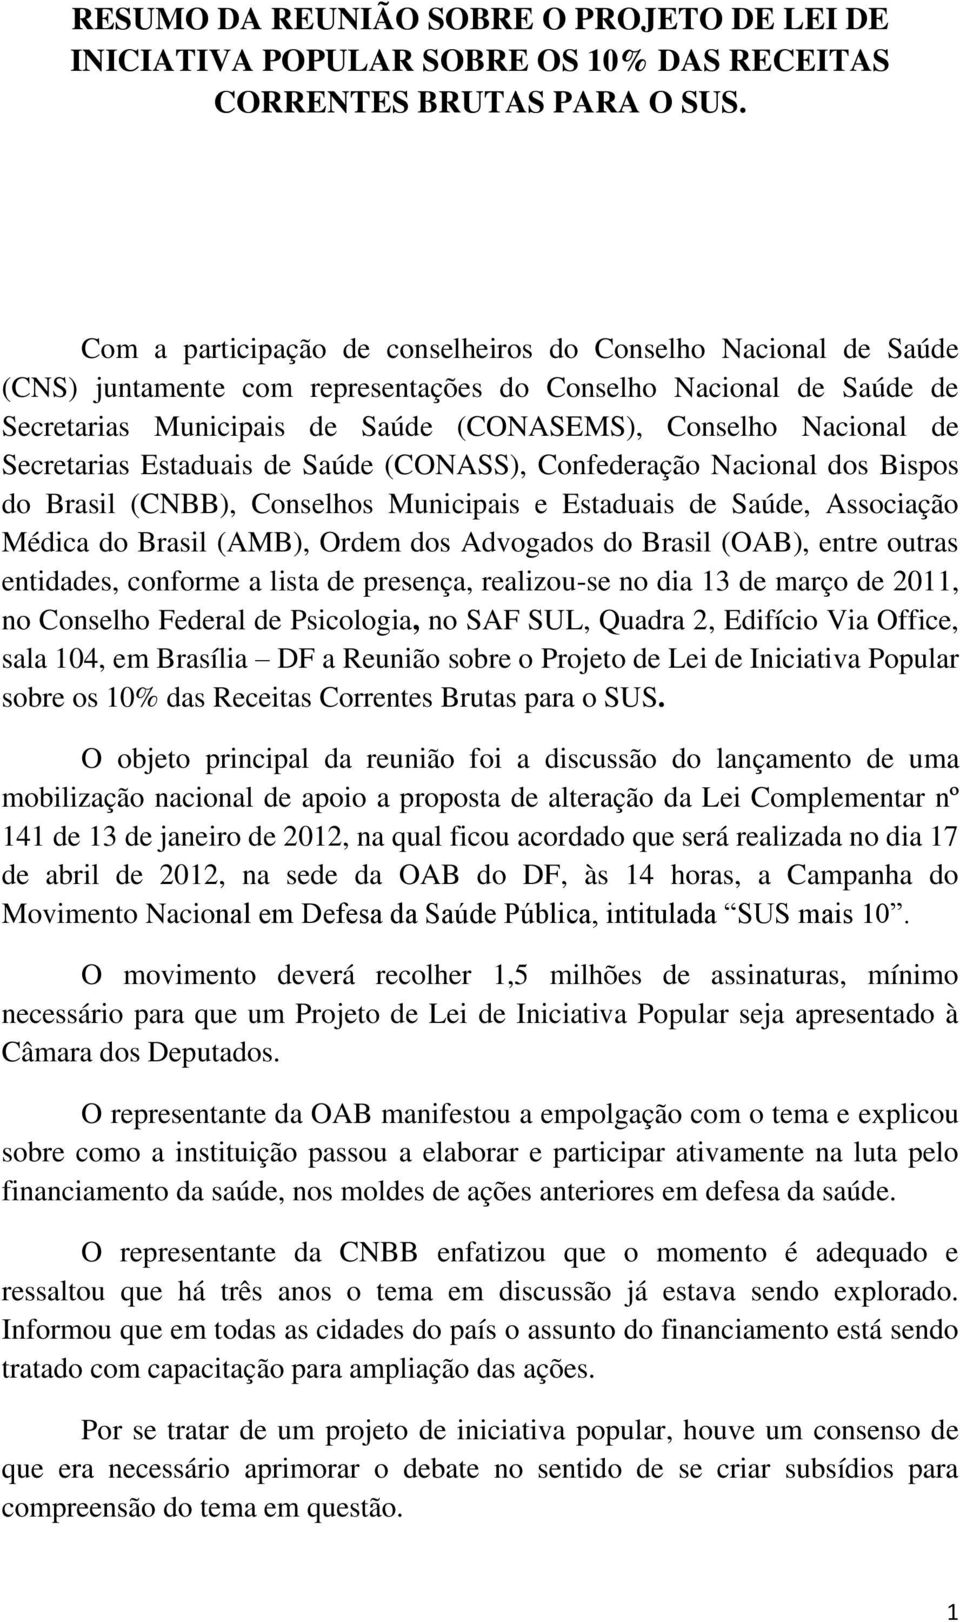 Secretarias Estaduais de Saúde (CONASS), Confederação Nacional dos Bispos do Brasil (CNBB), Conselhos Municipais e Estaduais de Saúde, Associação Médica do Brasil (AMB), Ordem dos Advogados do Brasil